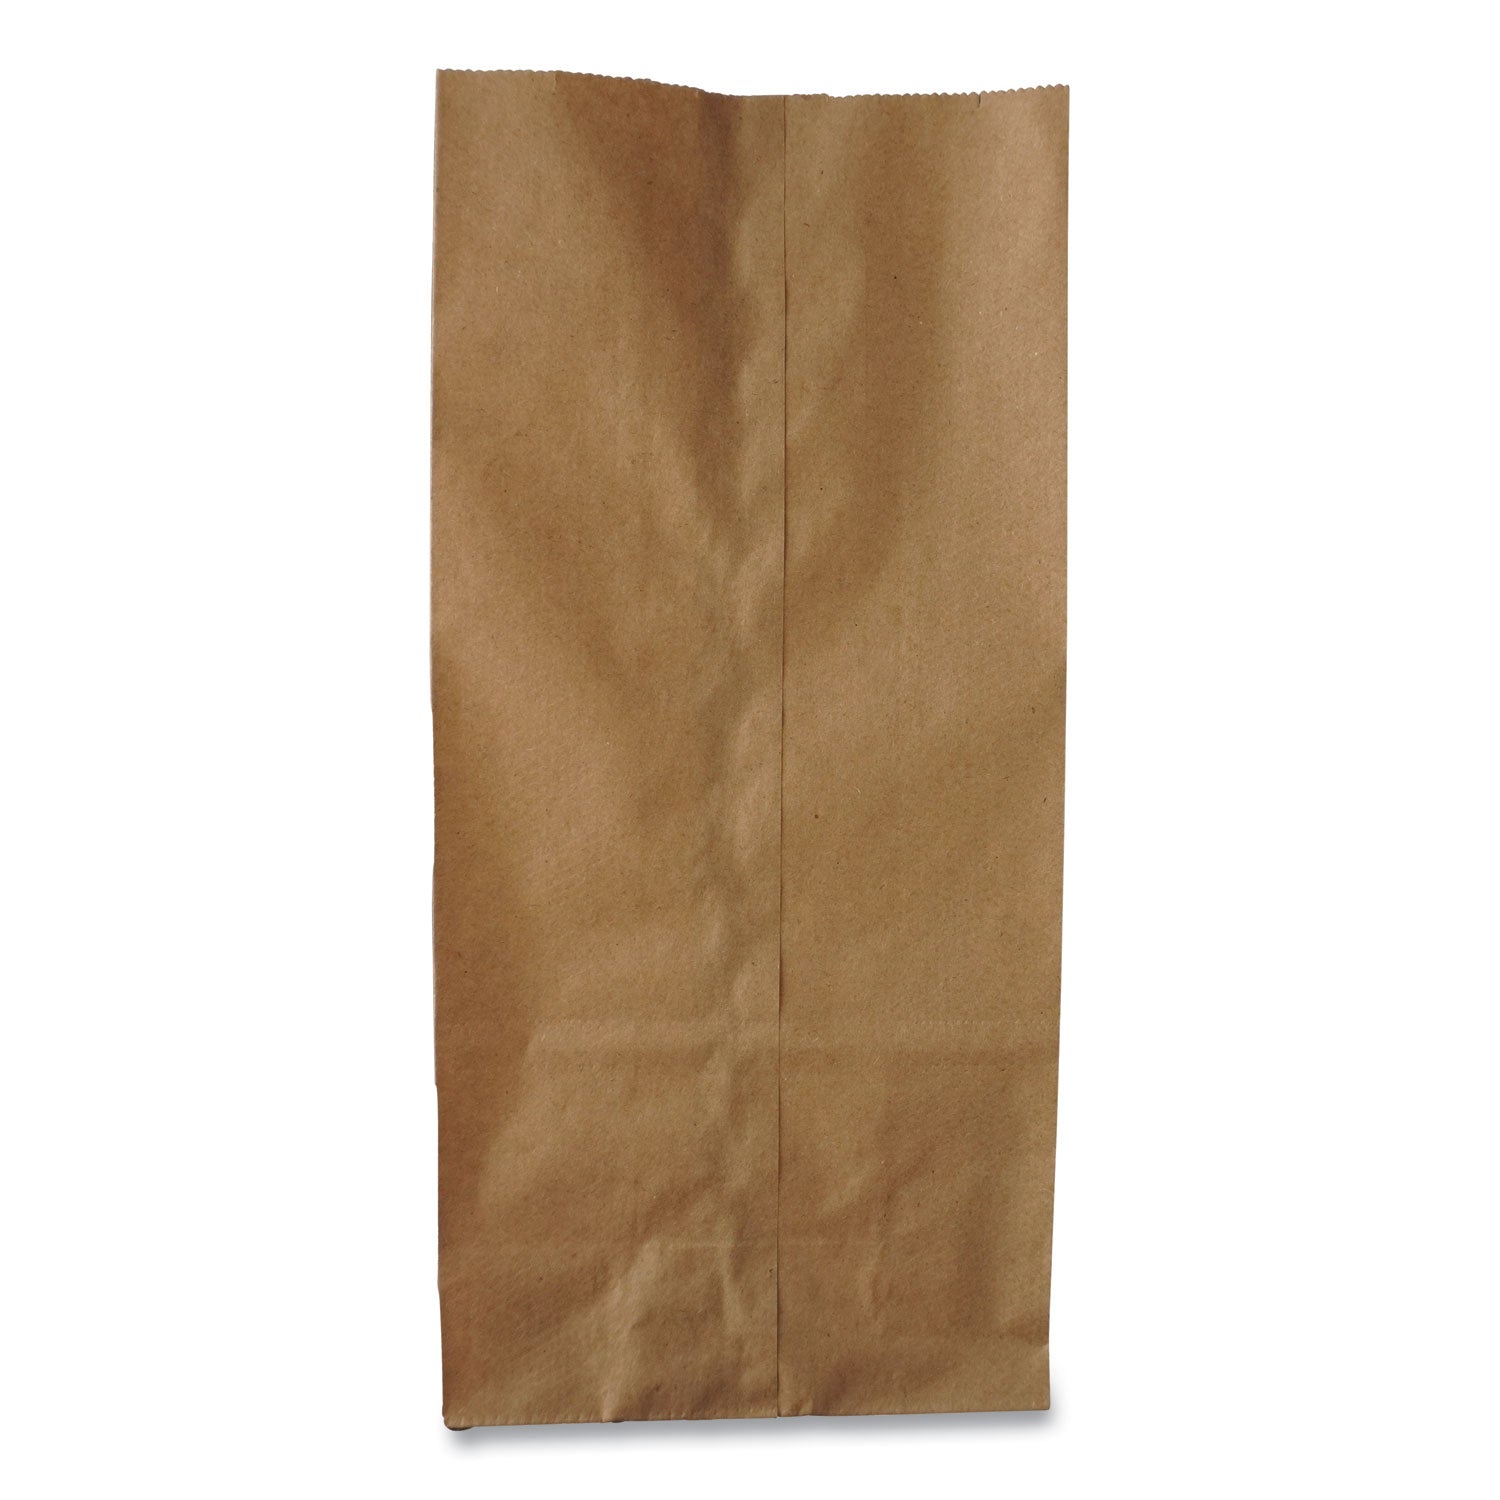 grocery-paper-bags-35-lb-capacity-#6-6-x-363-x-1106-kraft-500-bags_baggk6500 - 1